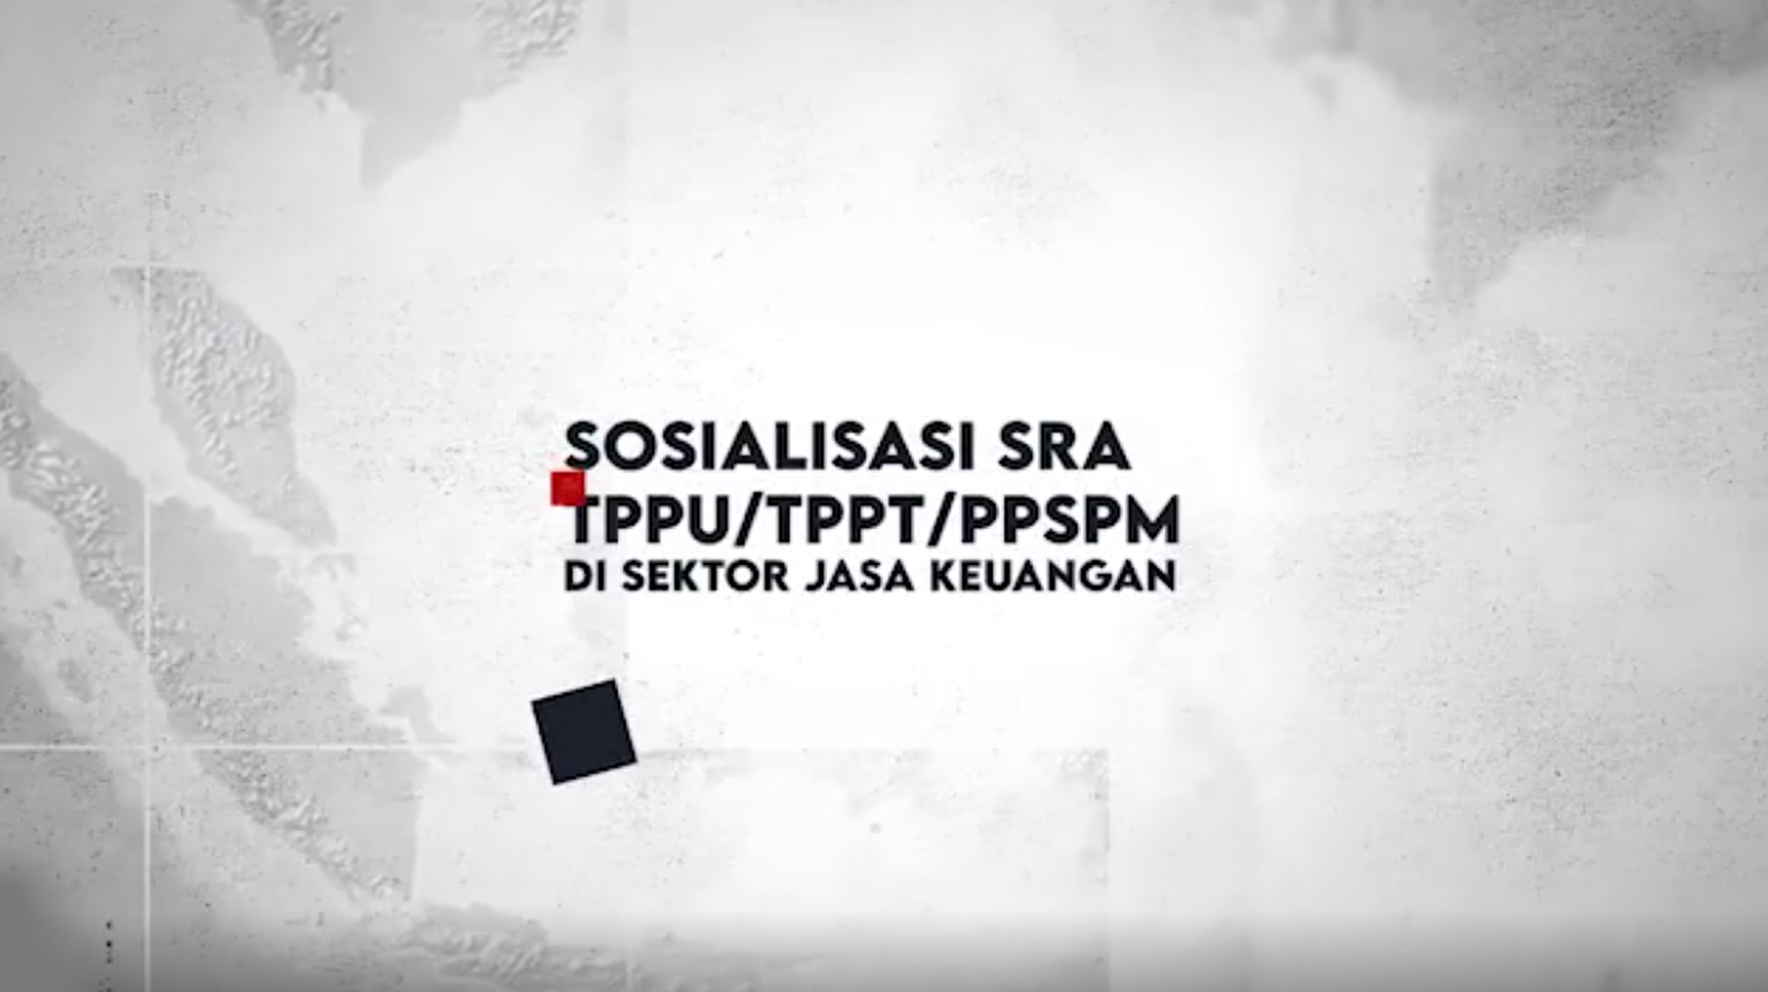 thumb - Sosialisasi SRA TPPU TPPT PPSPM SJK 2021